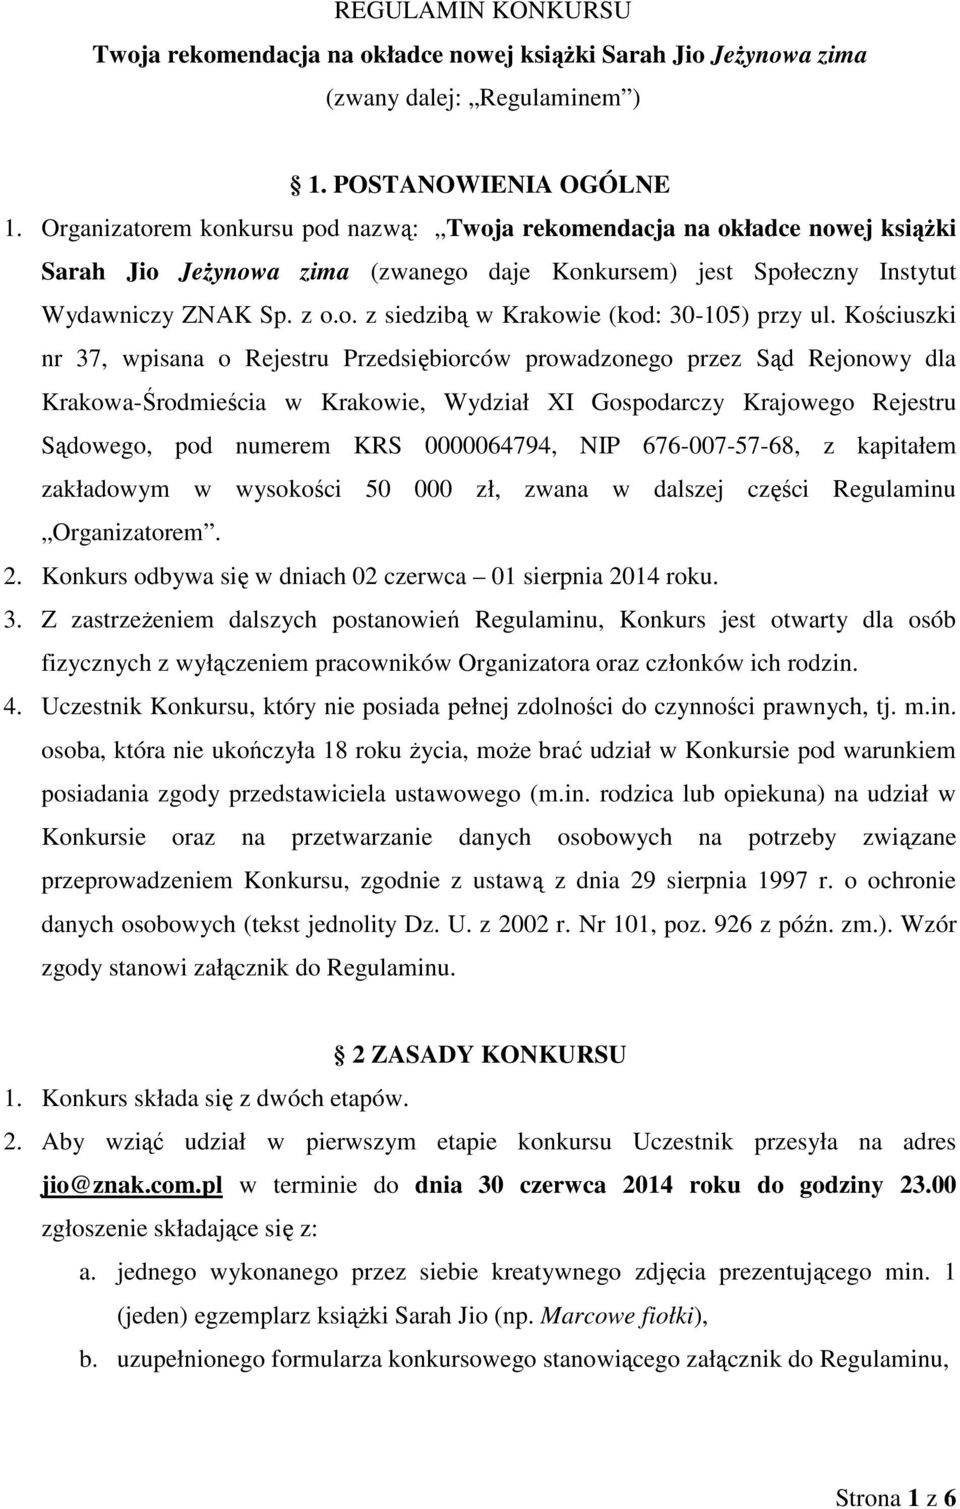 Kościuszki nr 37, wpisana o Rejestru Przedsiębiorców prowadzonego przez Sąd Rejonowy dla Krakowa-Środmieścia w Krakowie, Wydział XI Gospodarczy Krajowego Rejestru Sądowego, pod numerem KRS